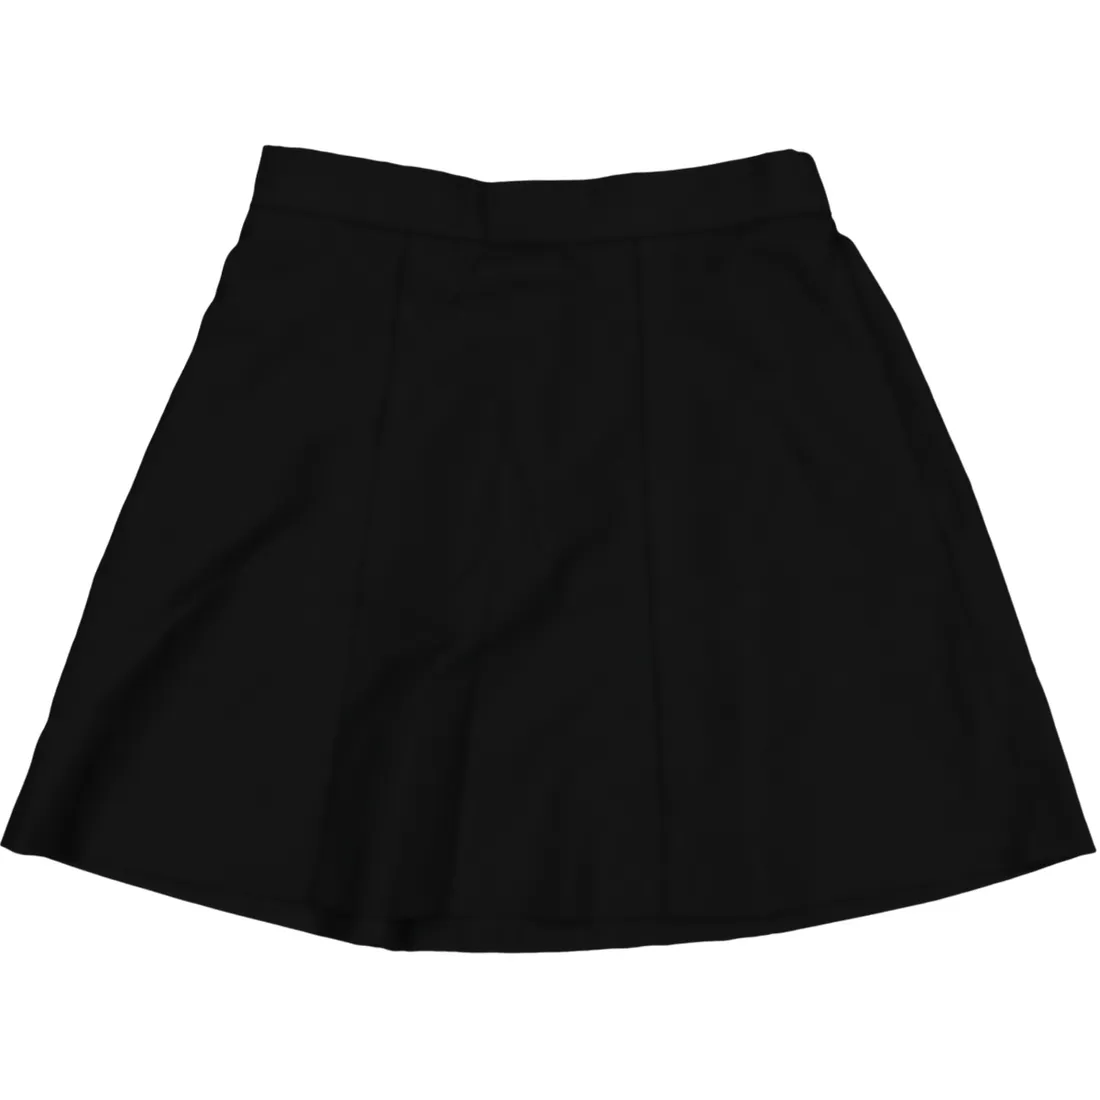 Grey School Skirt | School | PEP